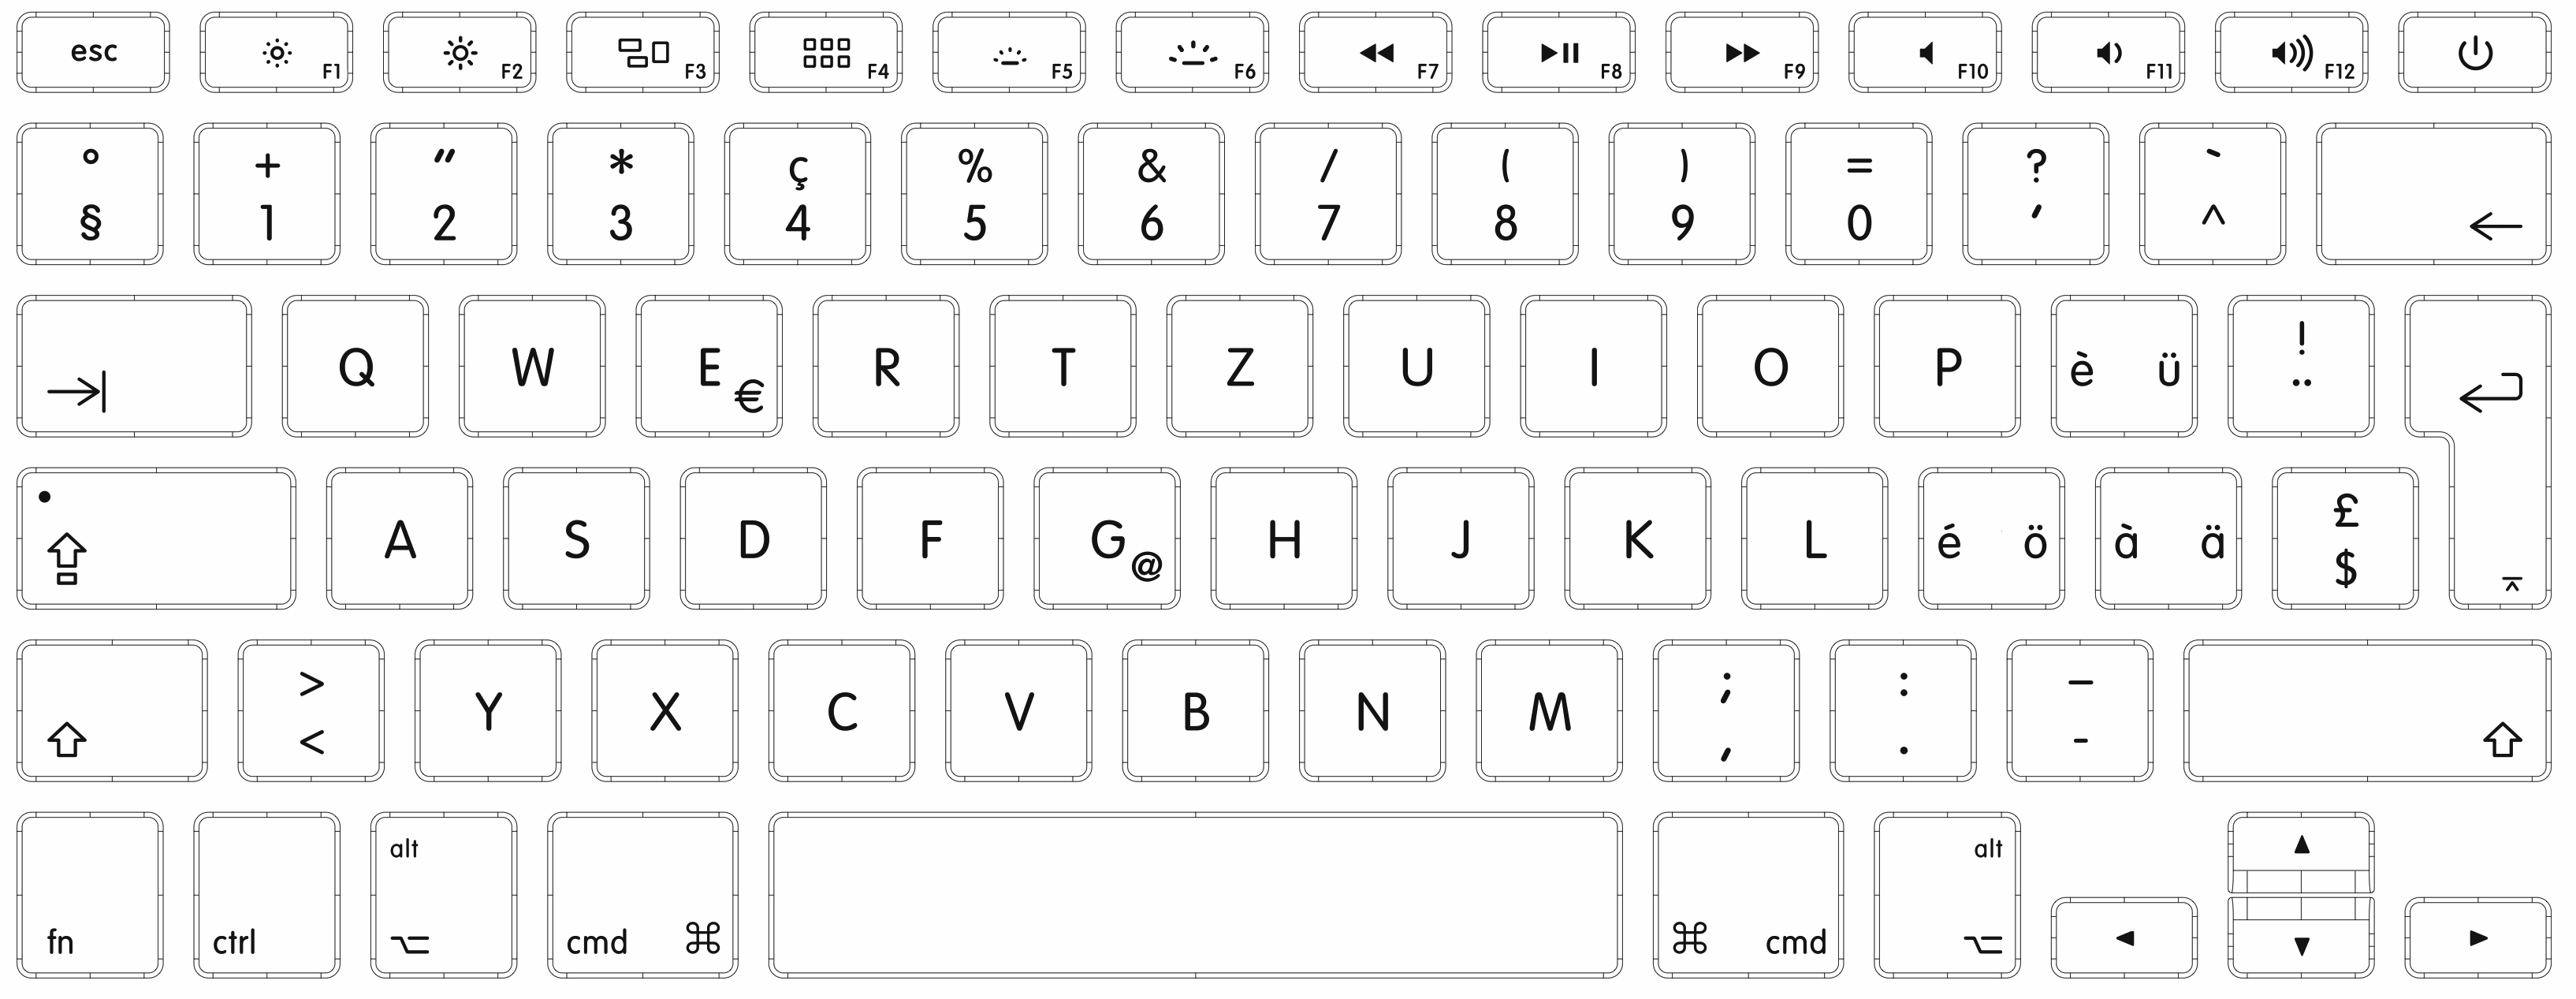 Mac Tastatur, Notion Tastaturkürzel, Tastaturkürzel Notion